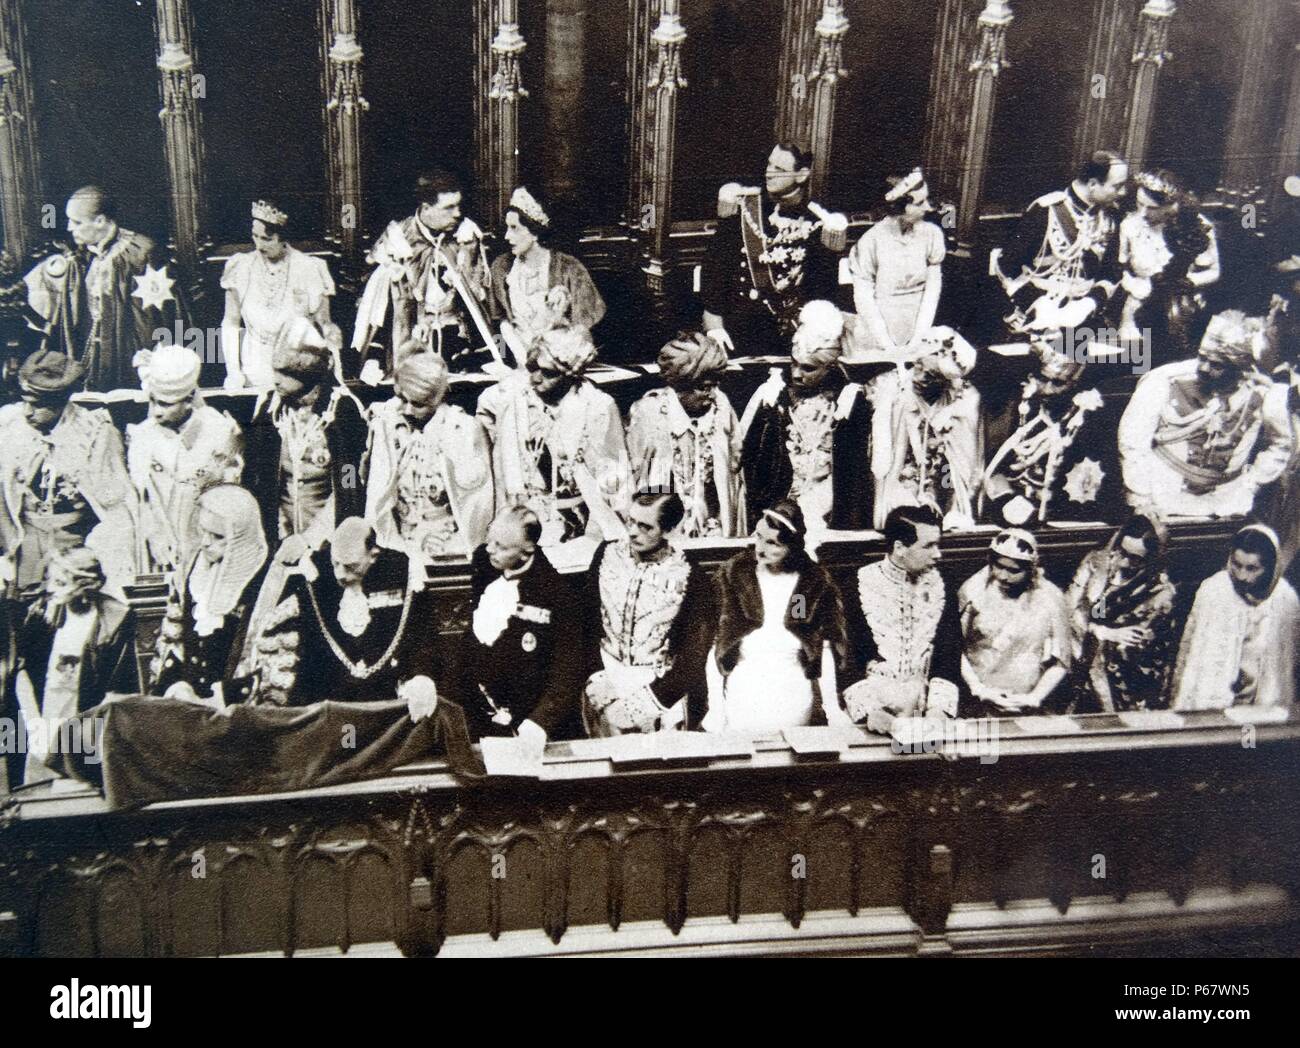 Krönung britischer König George VI in der Westminster Abbey. George VI (Albert Frederick Arthur George; 14. Dezember 1895 - vom 6. Februar 1952) König des Vereinigten Königreichs und der Dominions des British Commonwealth von 11 Dezember 1936 bis zu seinem Tod. Er war der letzte Kaiser von Indien und der erste Leiter des Commonwealth Stockfoto